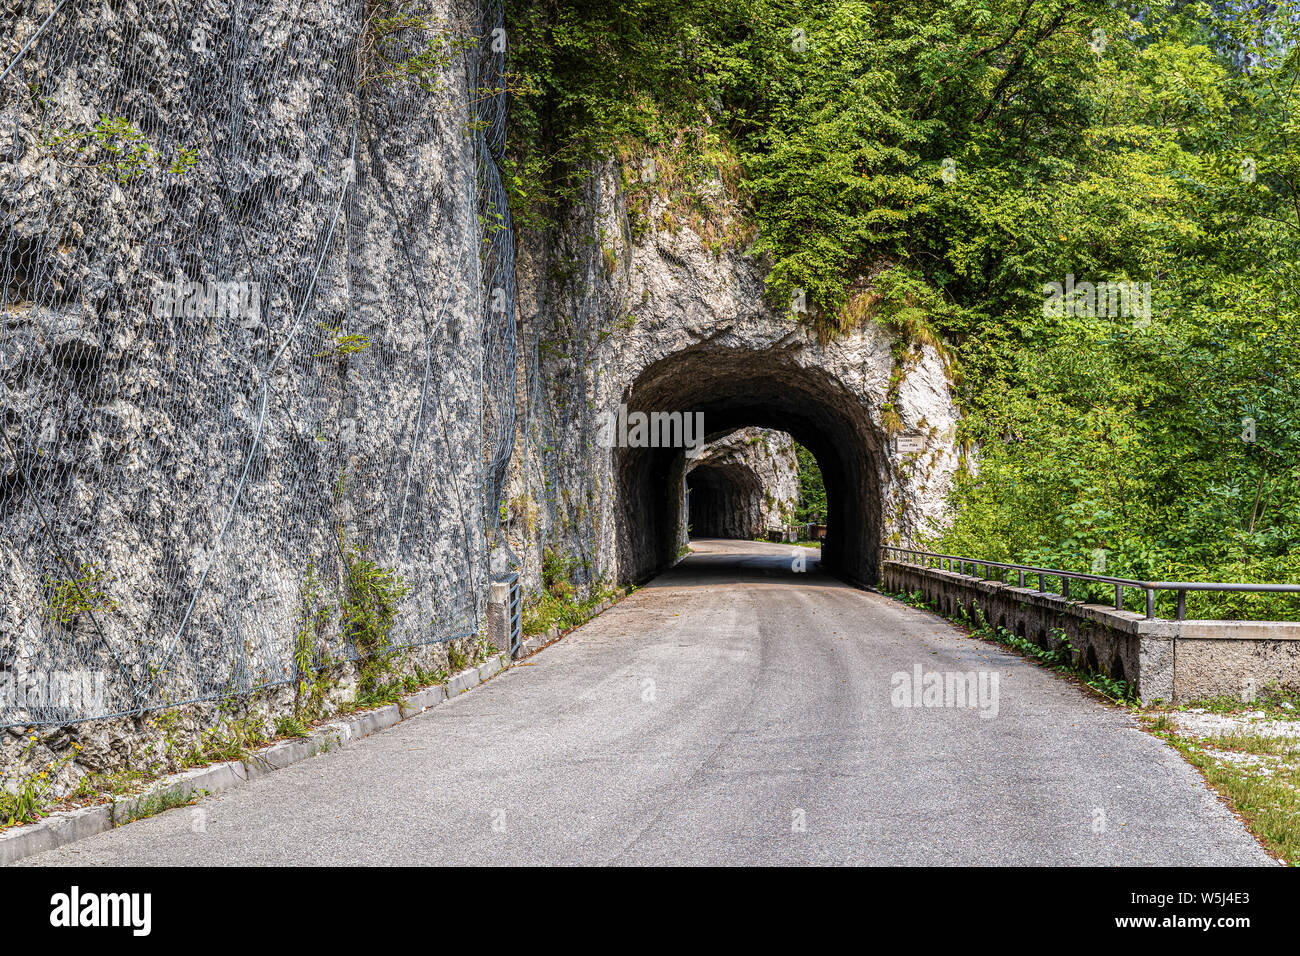 Italia Friuli Val Cellina Barcis - vecchia strada della Valcellina - Parco Naturale delle Dolomiti Friulane Foto Stock